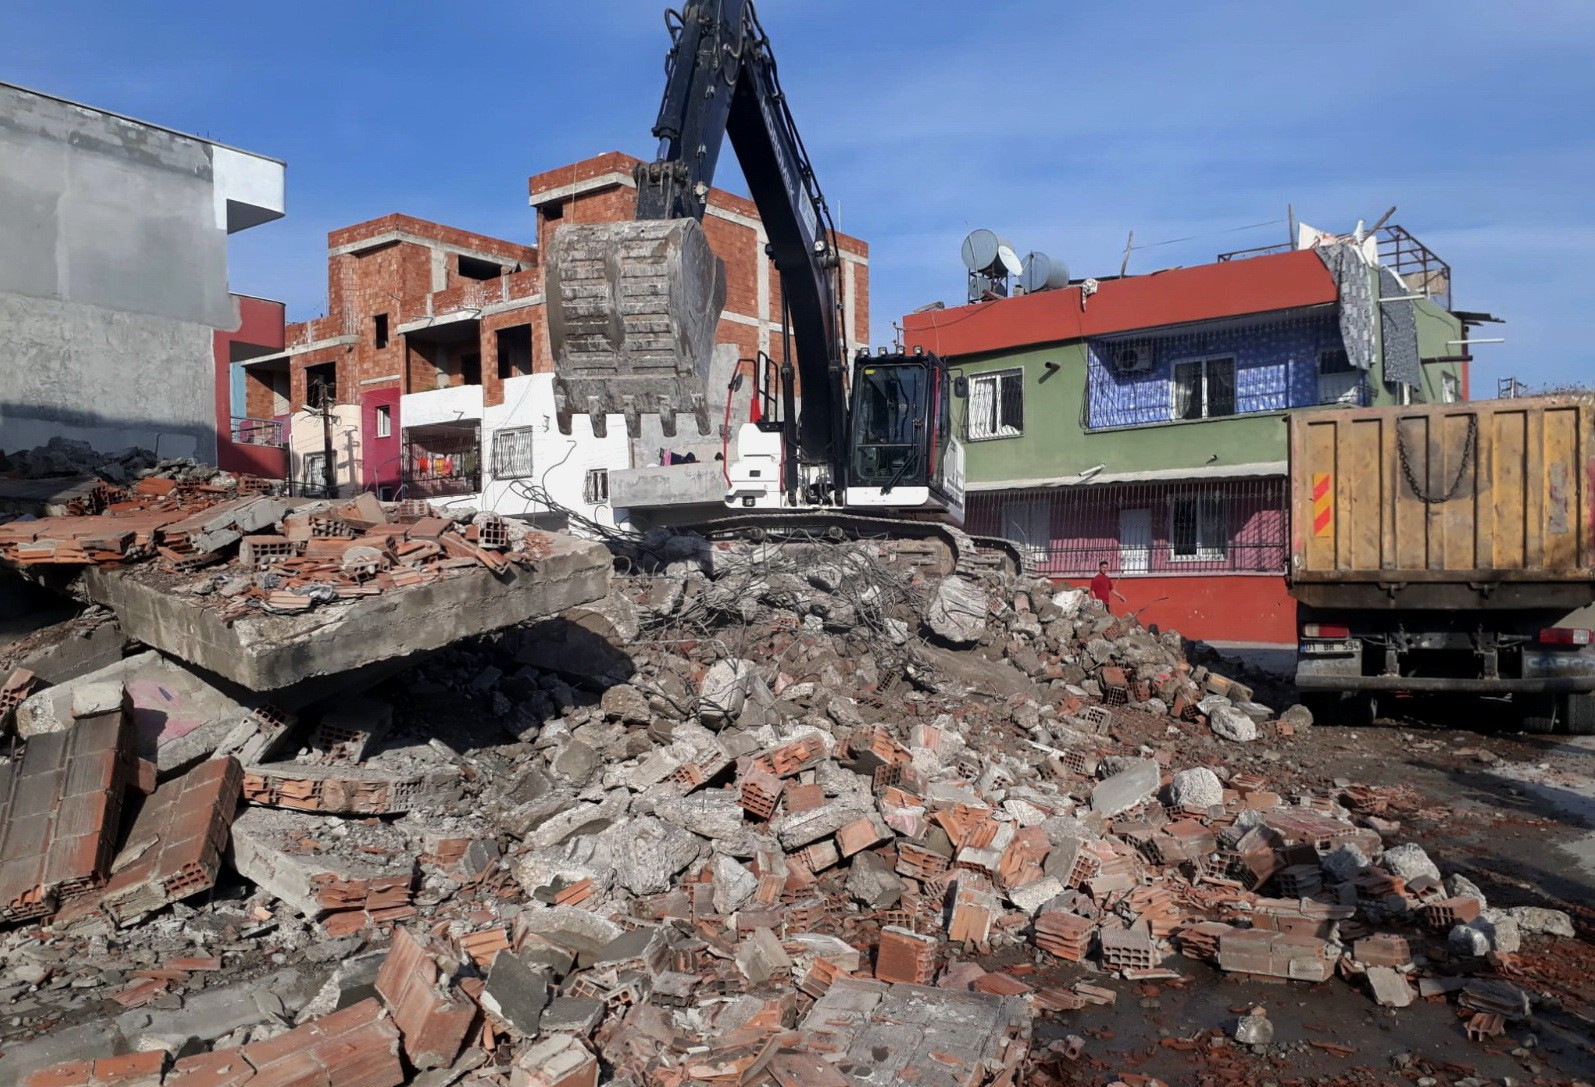 Akdeniz’de bir metruk bina daha yıkıldı